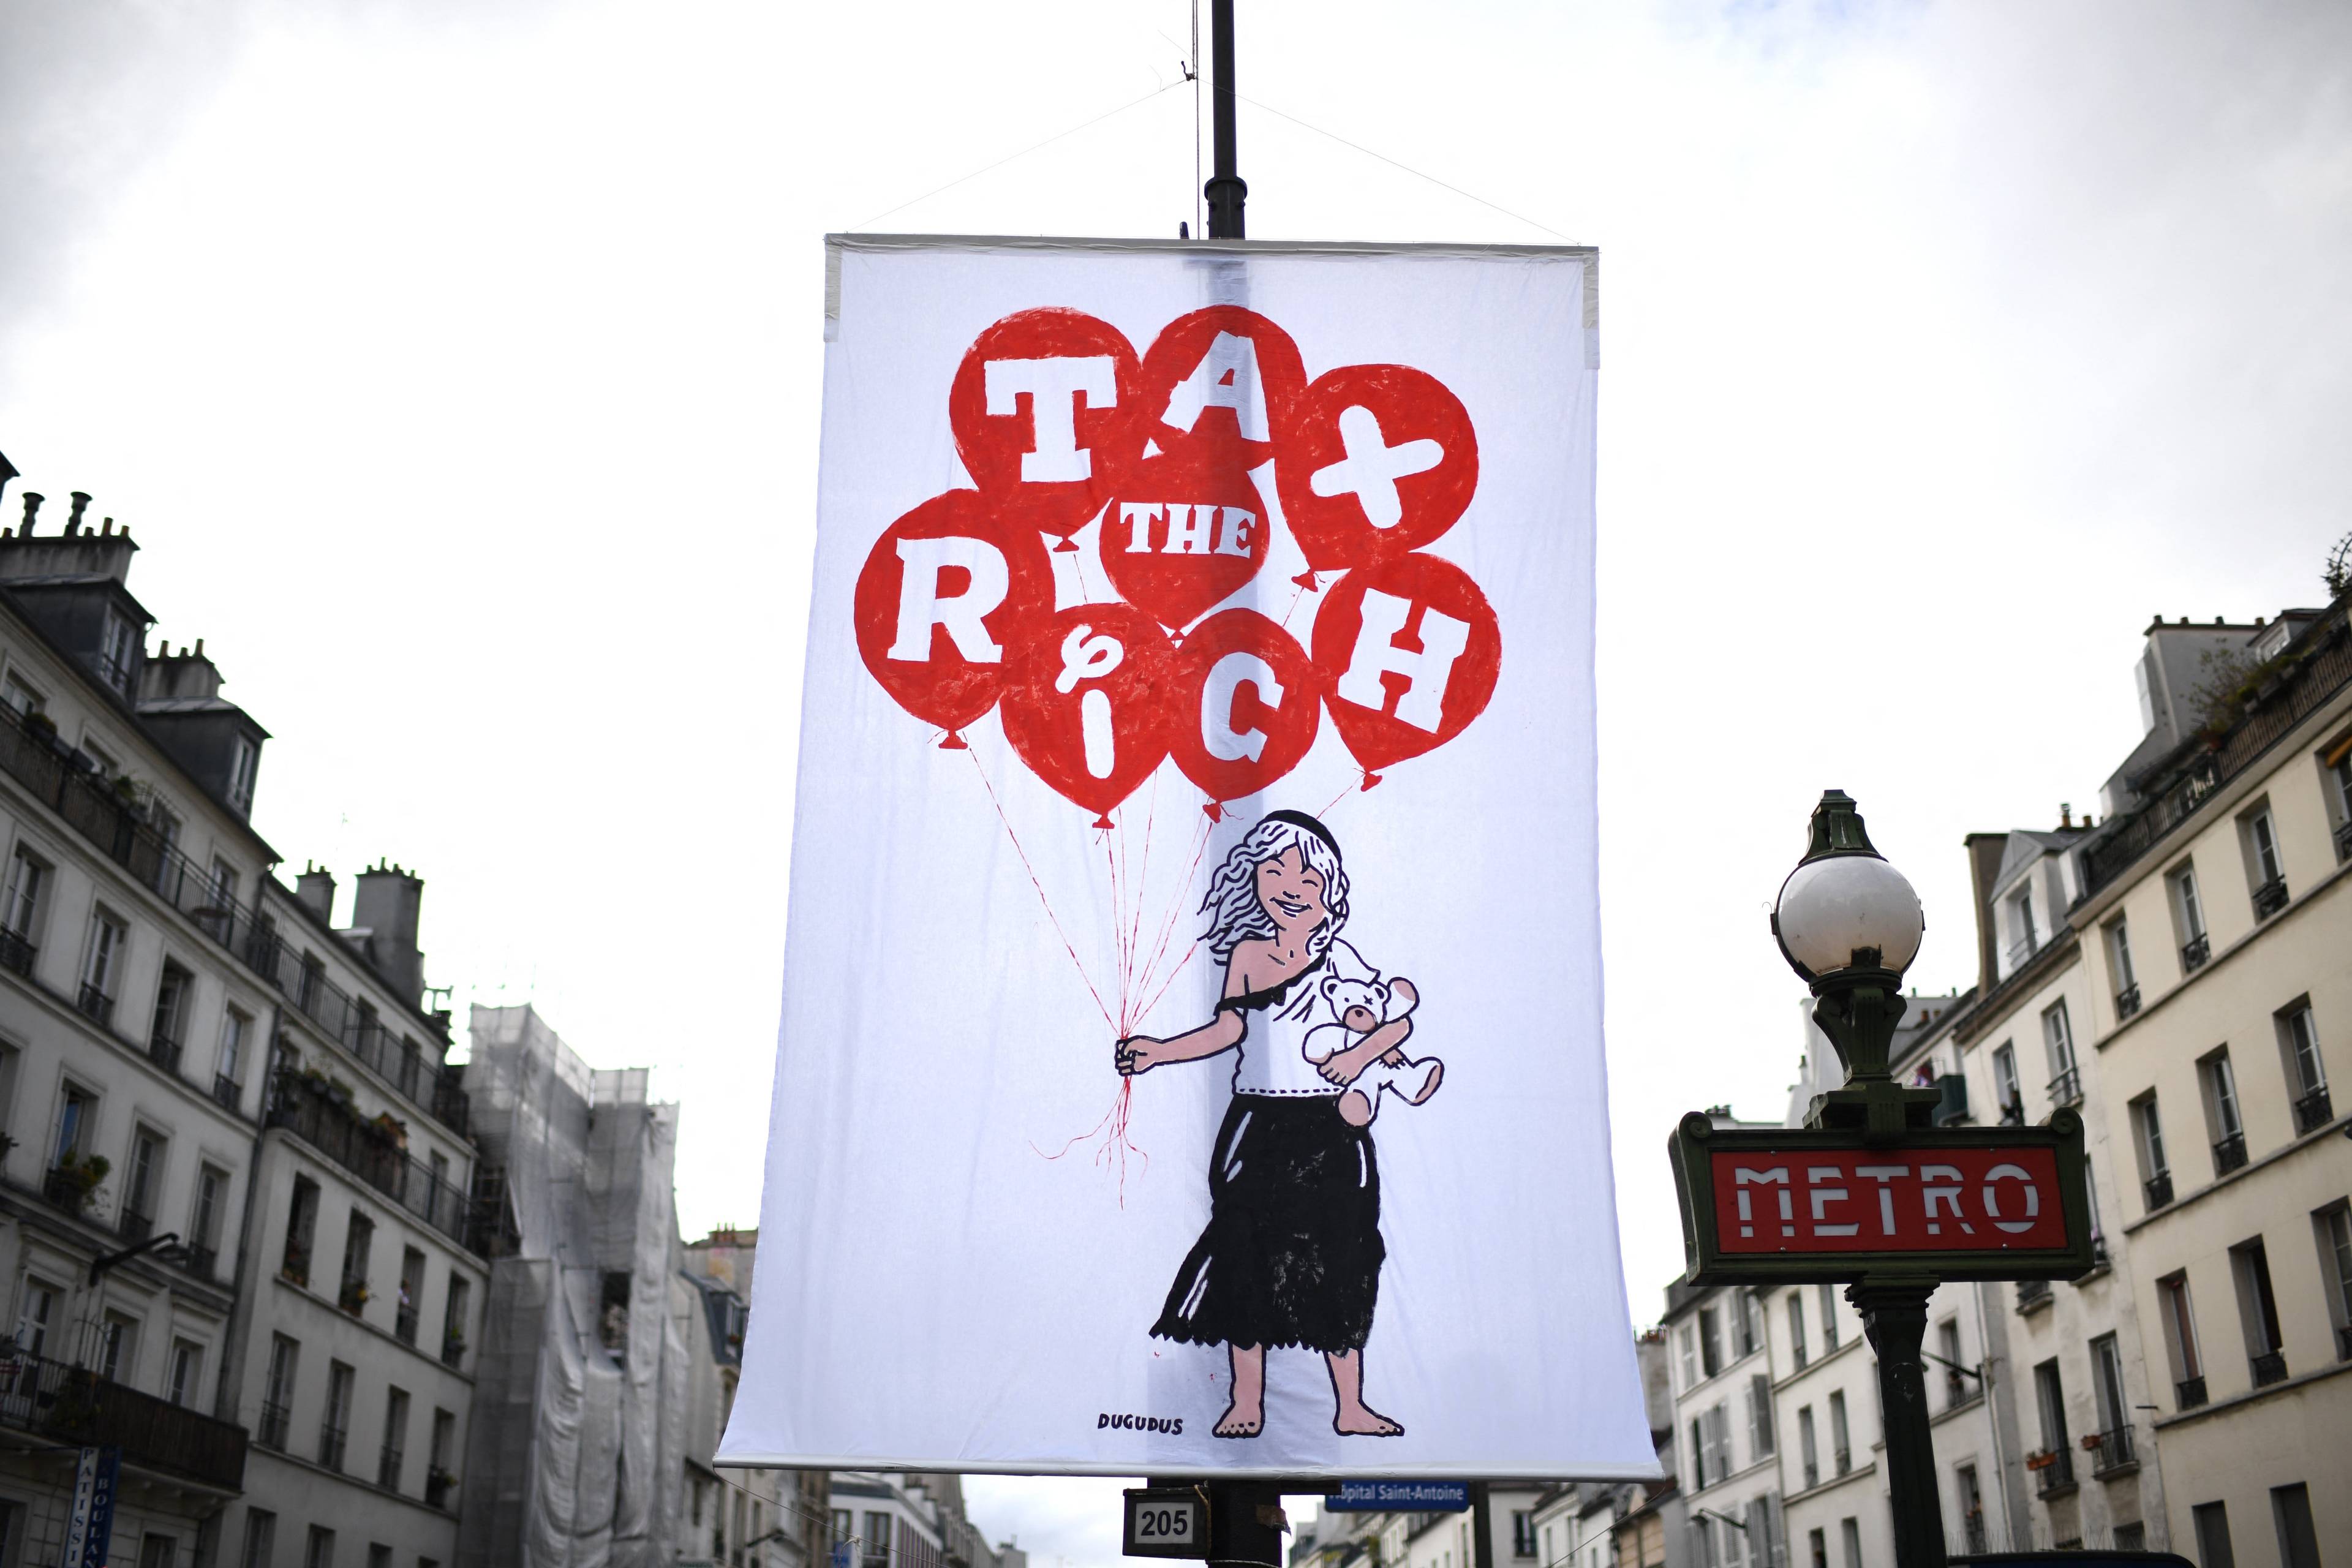 Baner z napisem "Opodatkować bogatych" wisi przy francuskiej ulicy